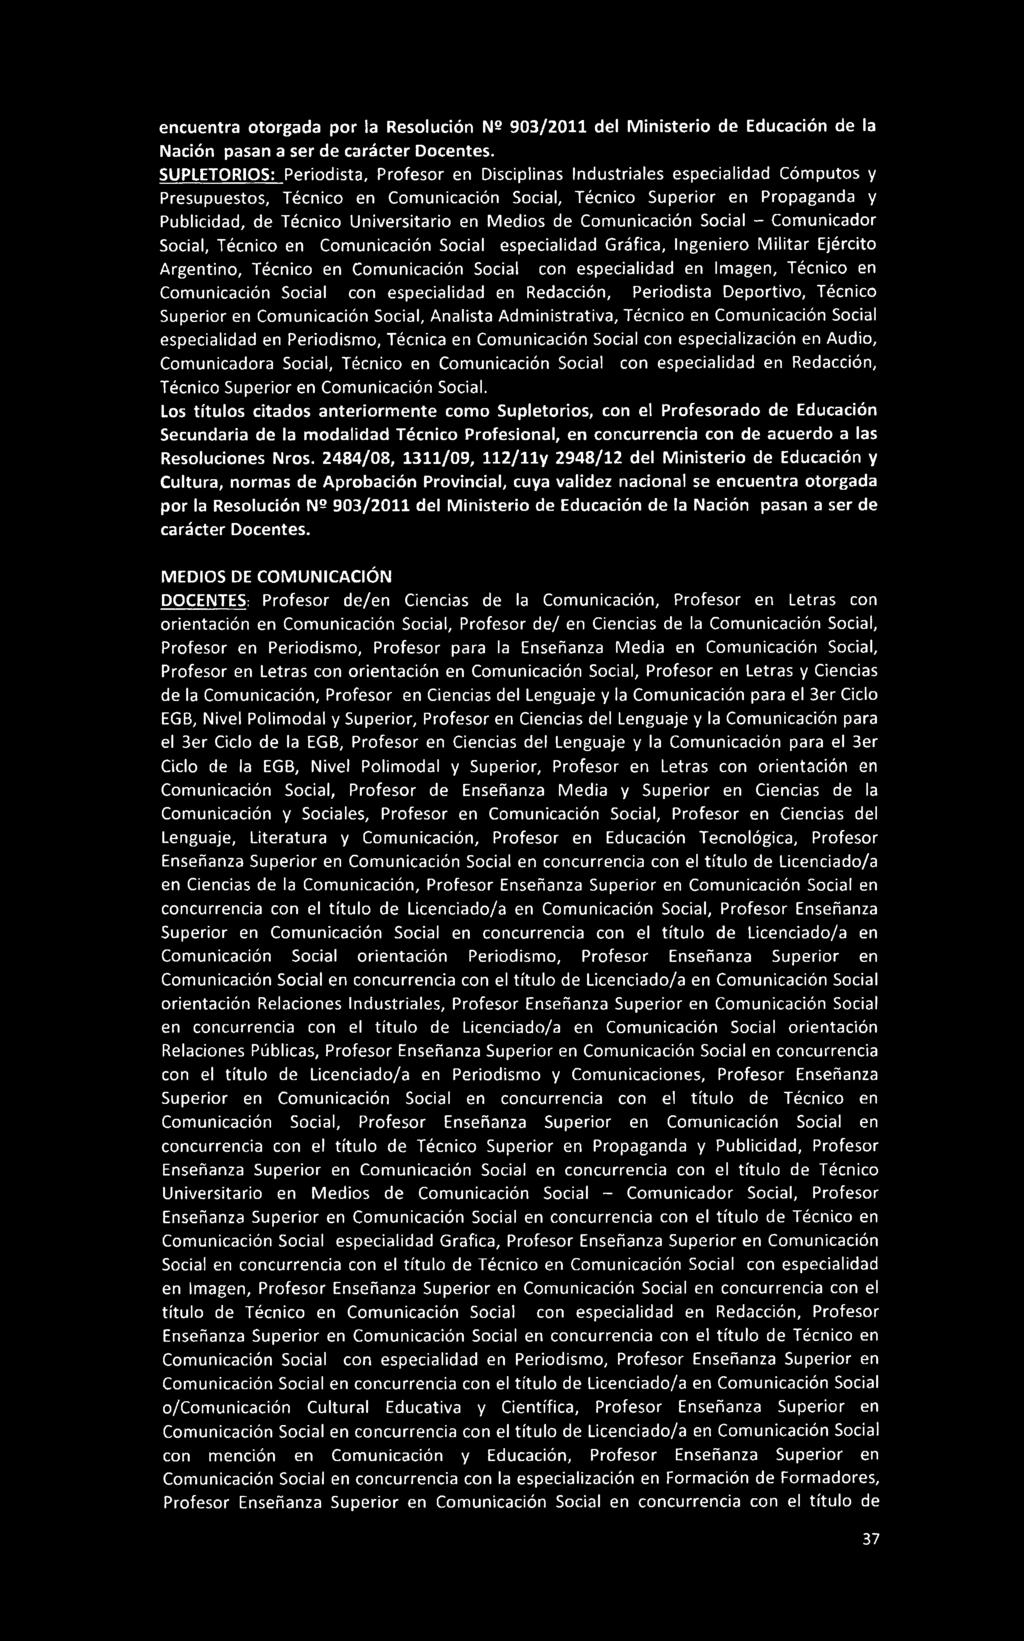 Propaganda y Publicidad, de Técnico Universitario en Medios de Comunicación Social - Comunicador Social, Técnico en Comunicación Social especialidad Gráfica, Ingeniero Militar Ejército Argentino,